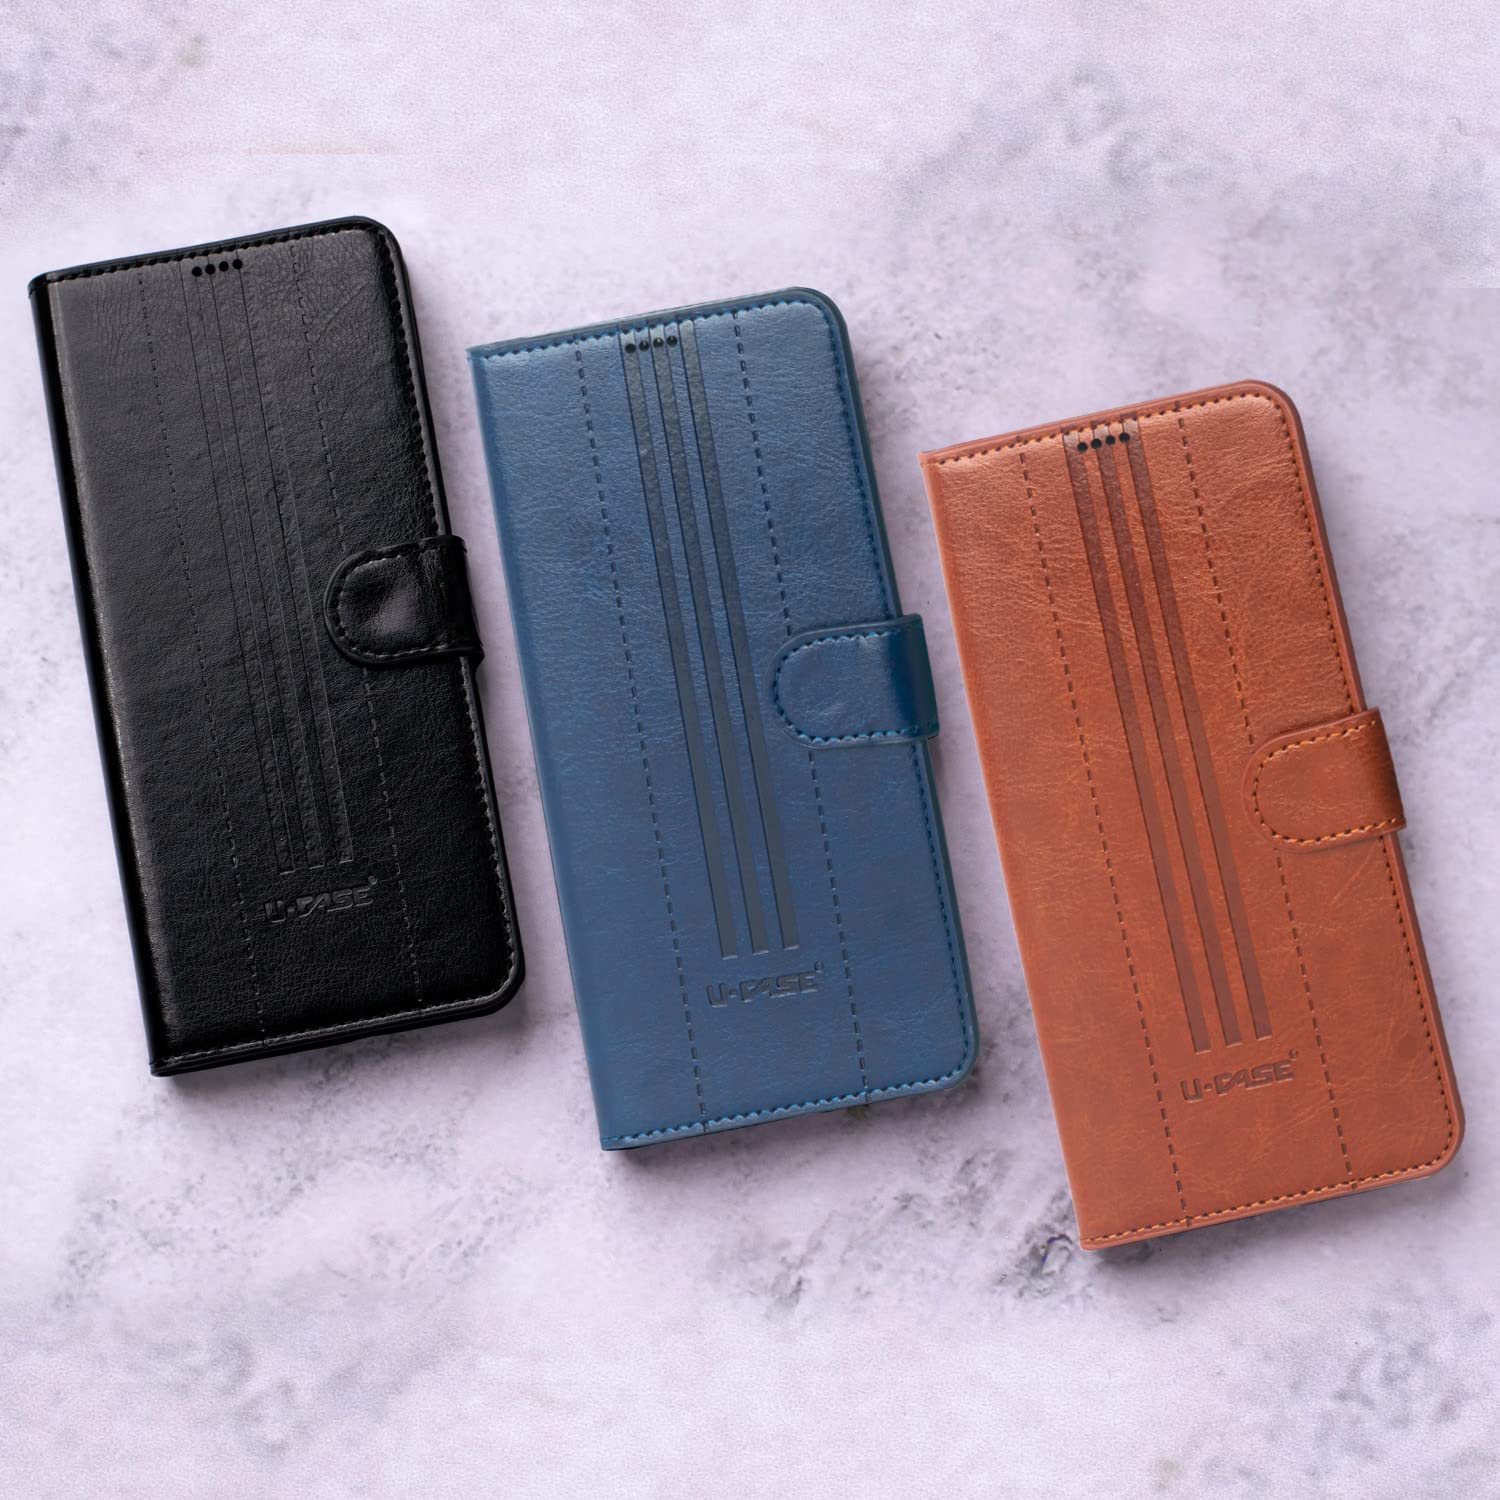 U-CASE Flip Cover for Realme C12, Realme Narzo 20, Realme Narzo 30A, Realme C25, Realme C25s Foldable Stand & Pocket Magnetic Closure colors